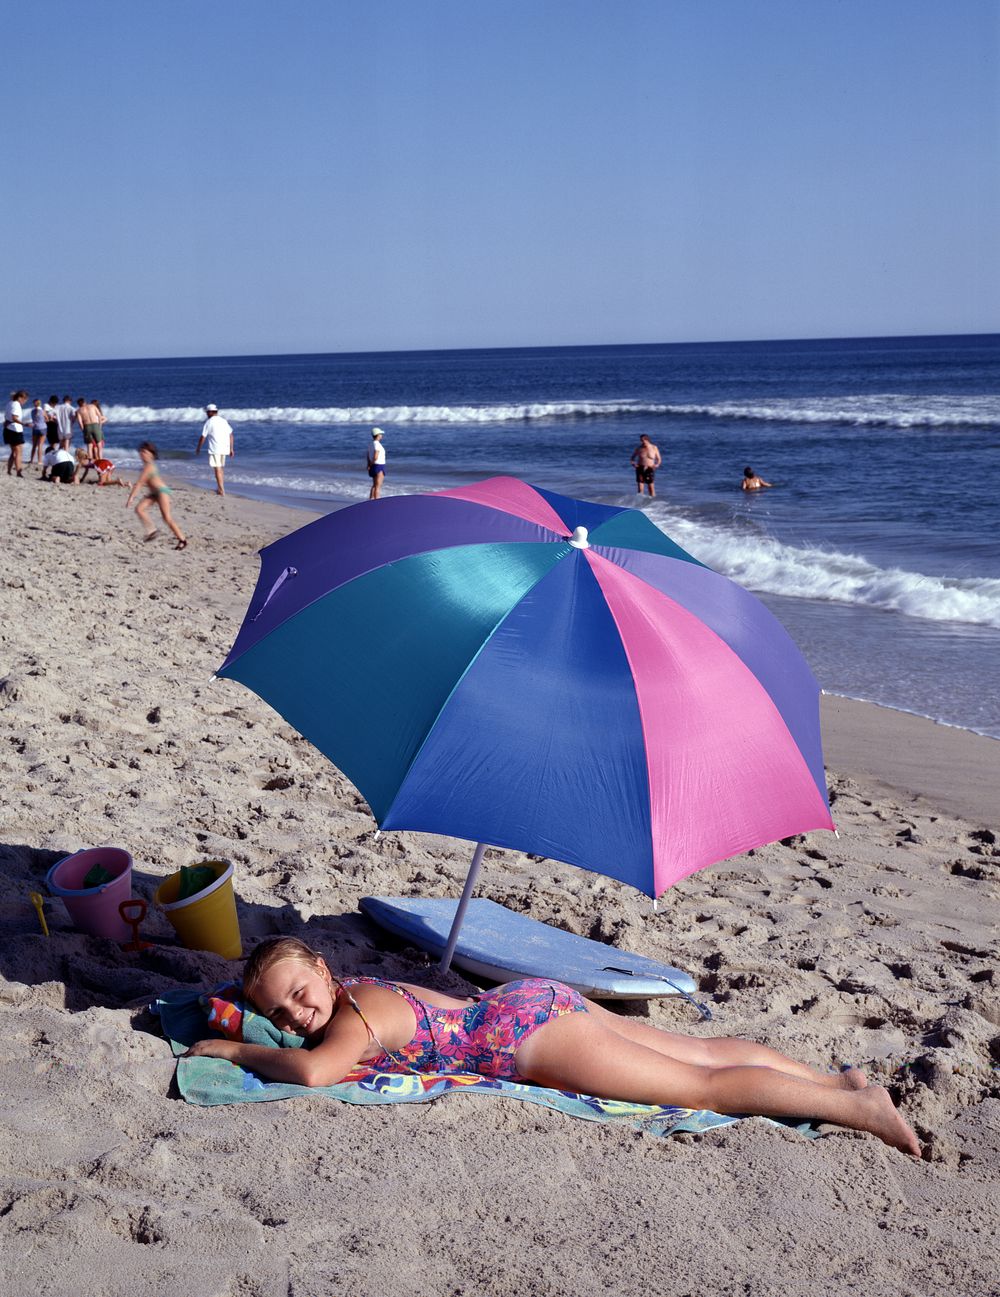 Sunbathers on Nantucket Island.